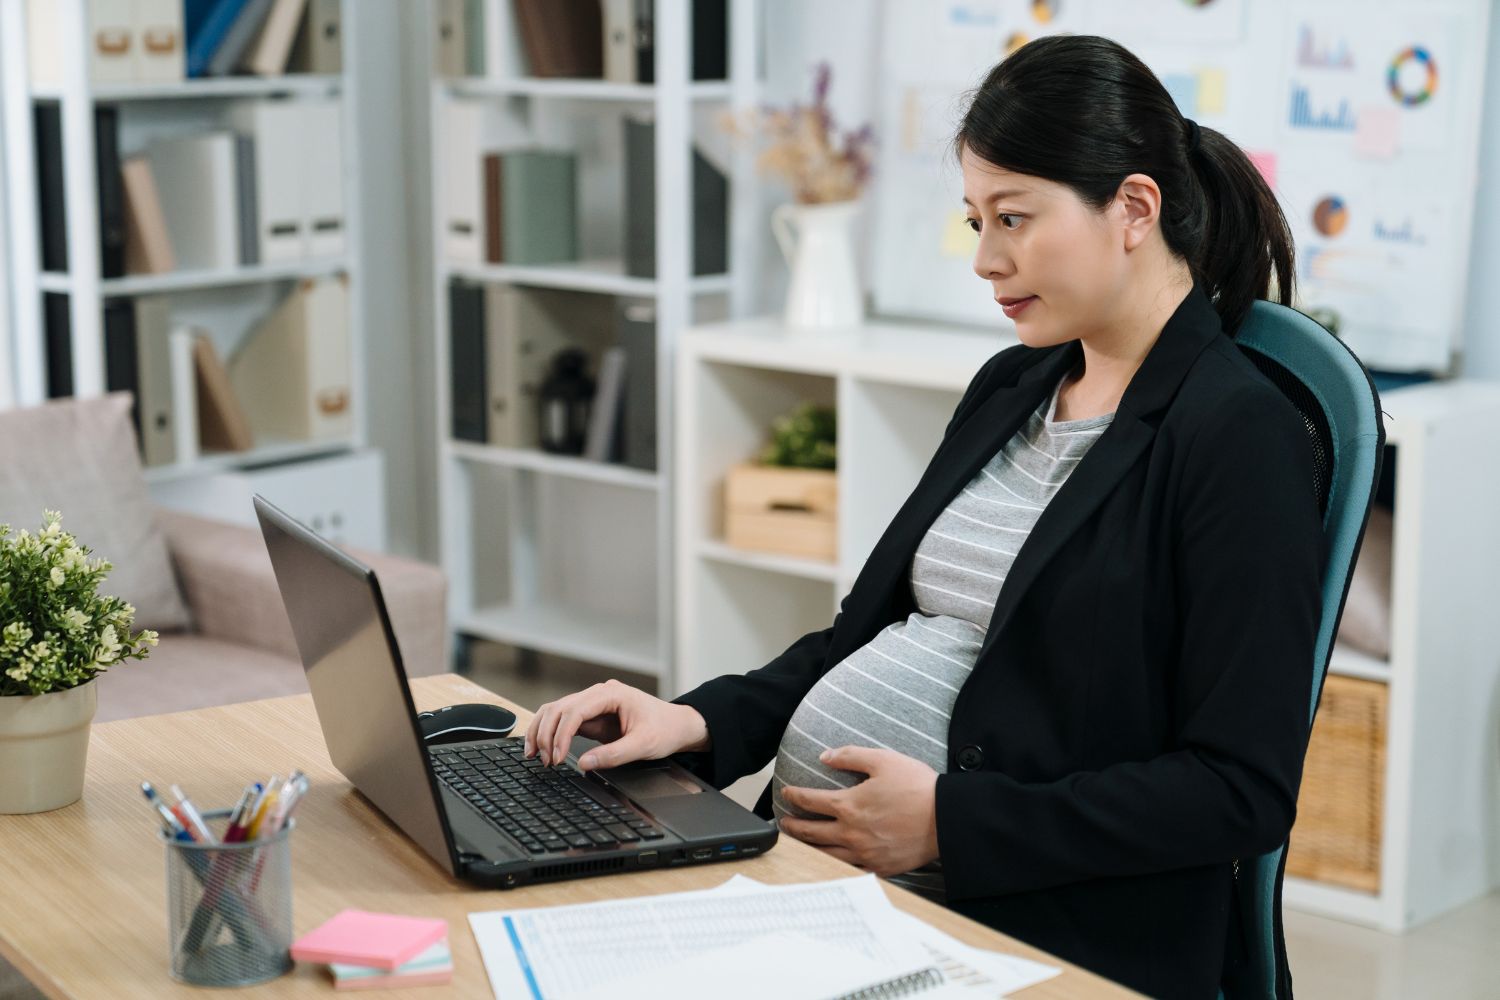 Research Report: Understanding Pregnancy Discrimination